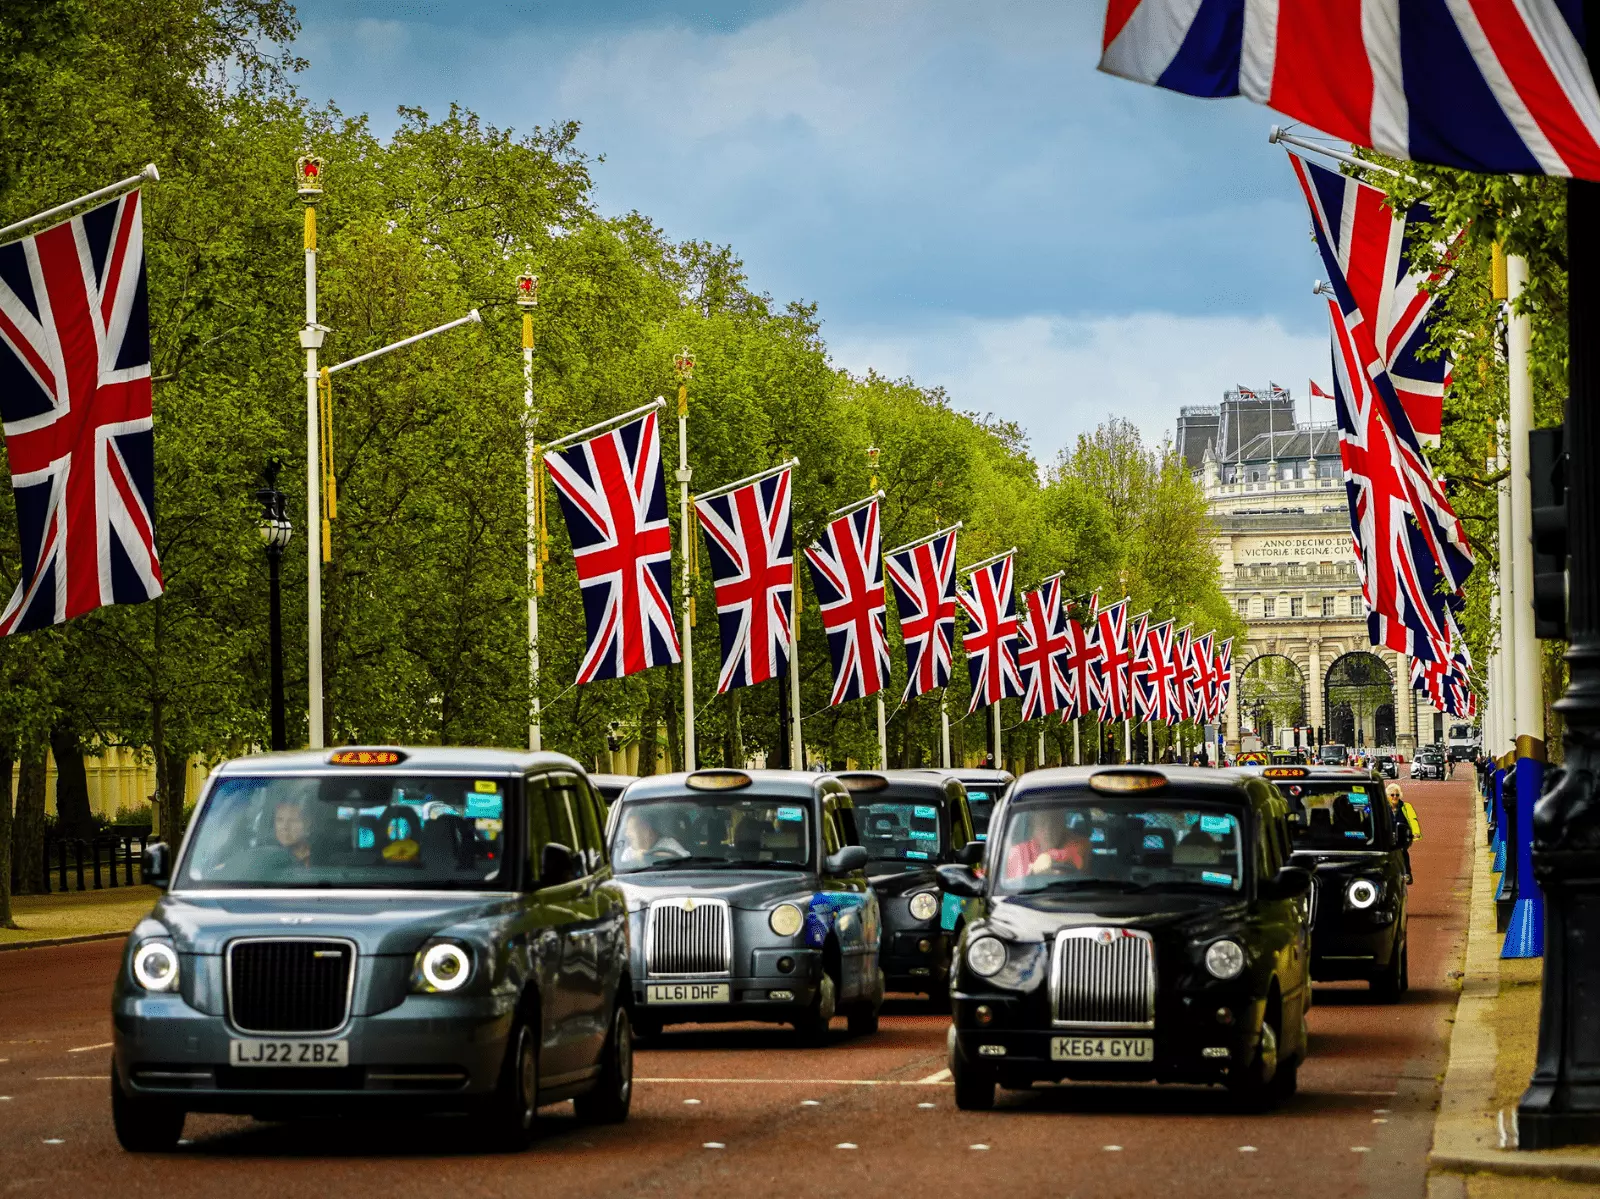 İngiltere bayrakları ve siyah taksiler